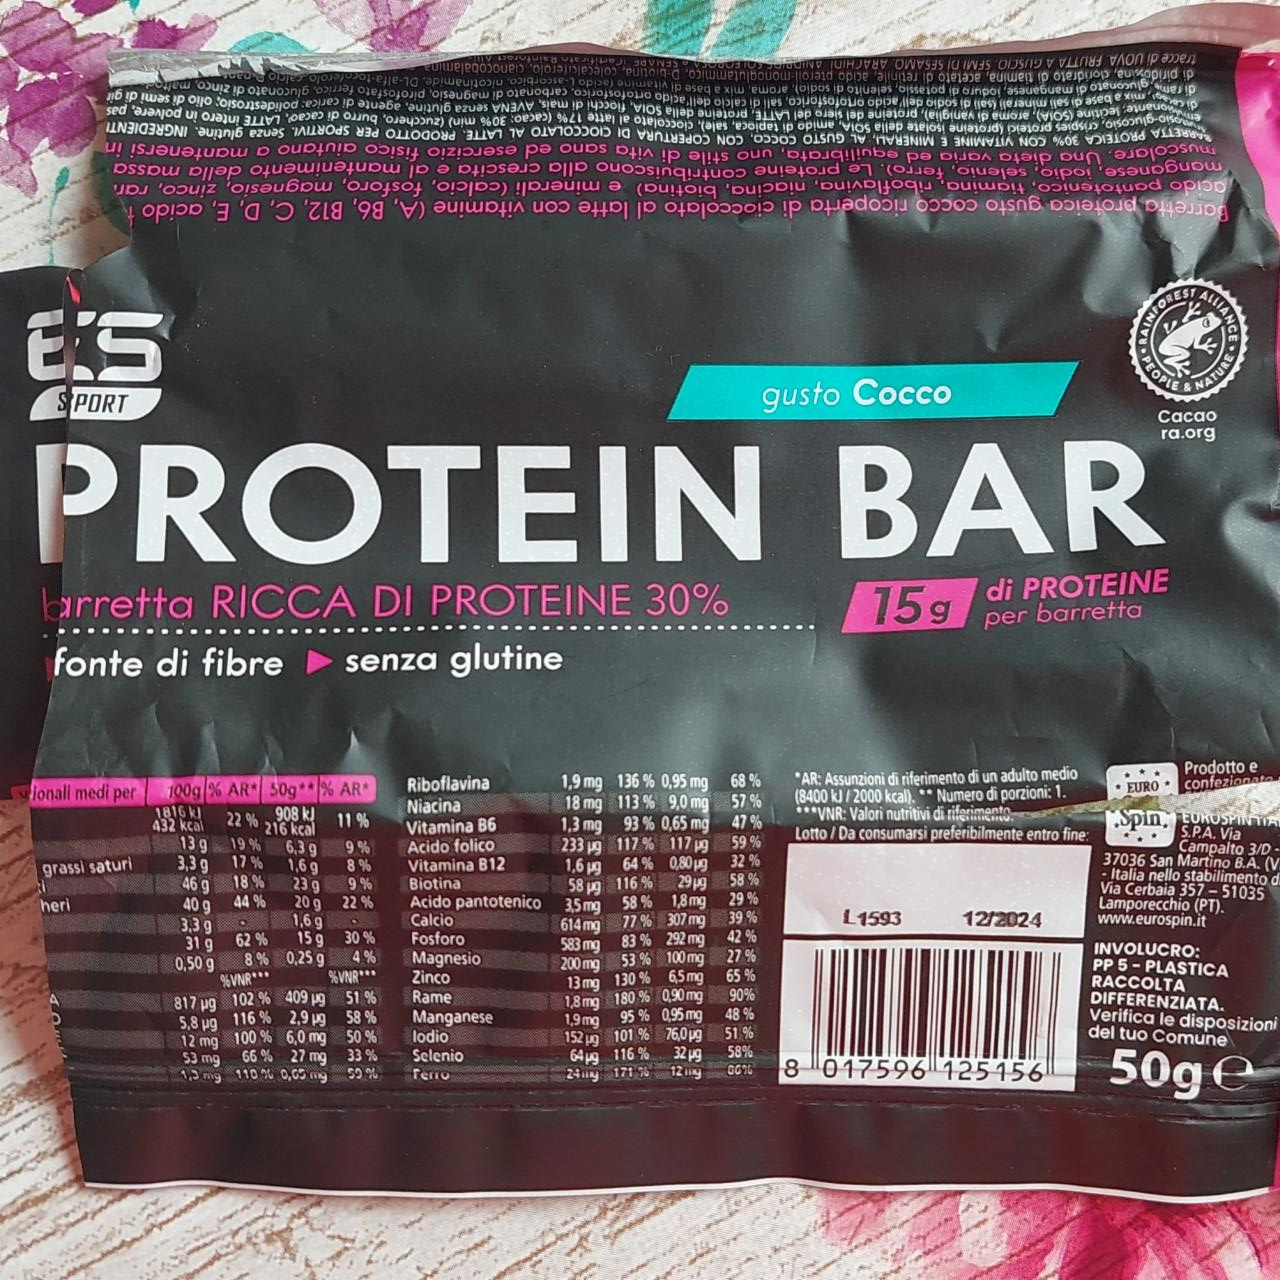 Fotografie - Protein bar Cocco E5 Sport